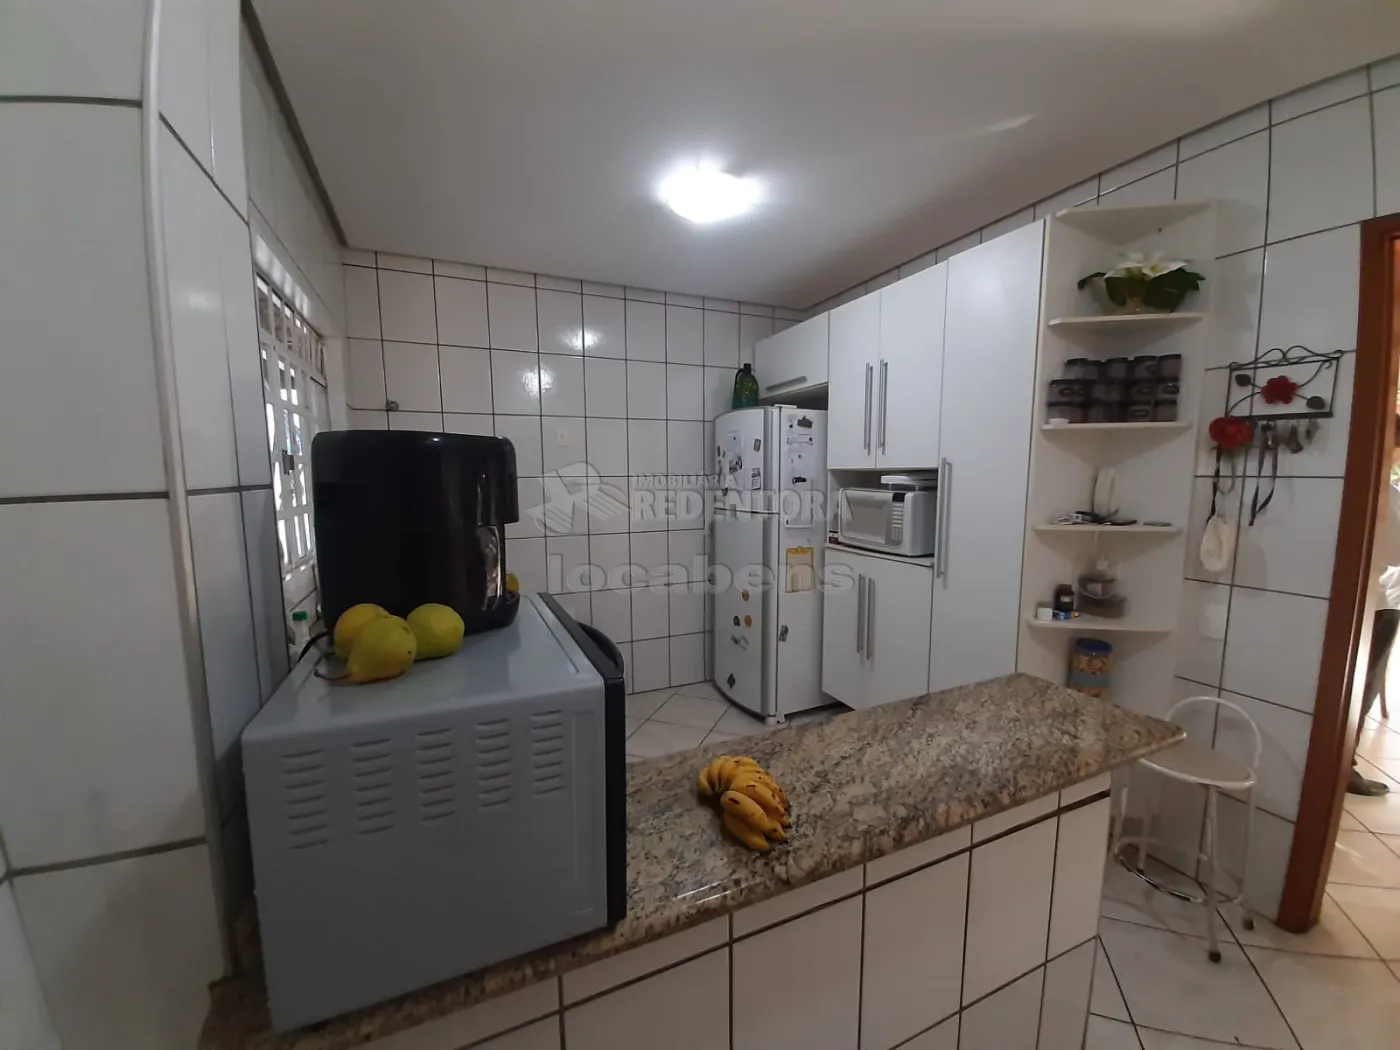 Comprar Casa / Padrão em São José do Rio Preto apenas R$ 330.000,00 - Foto 9